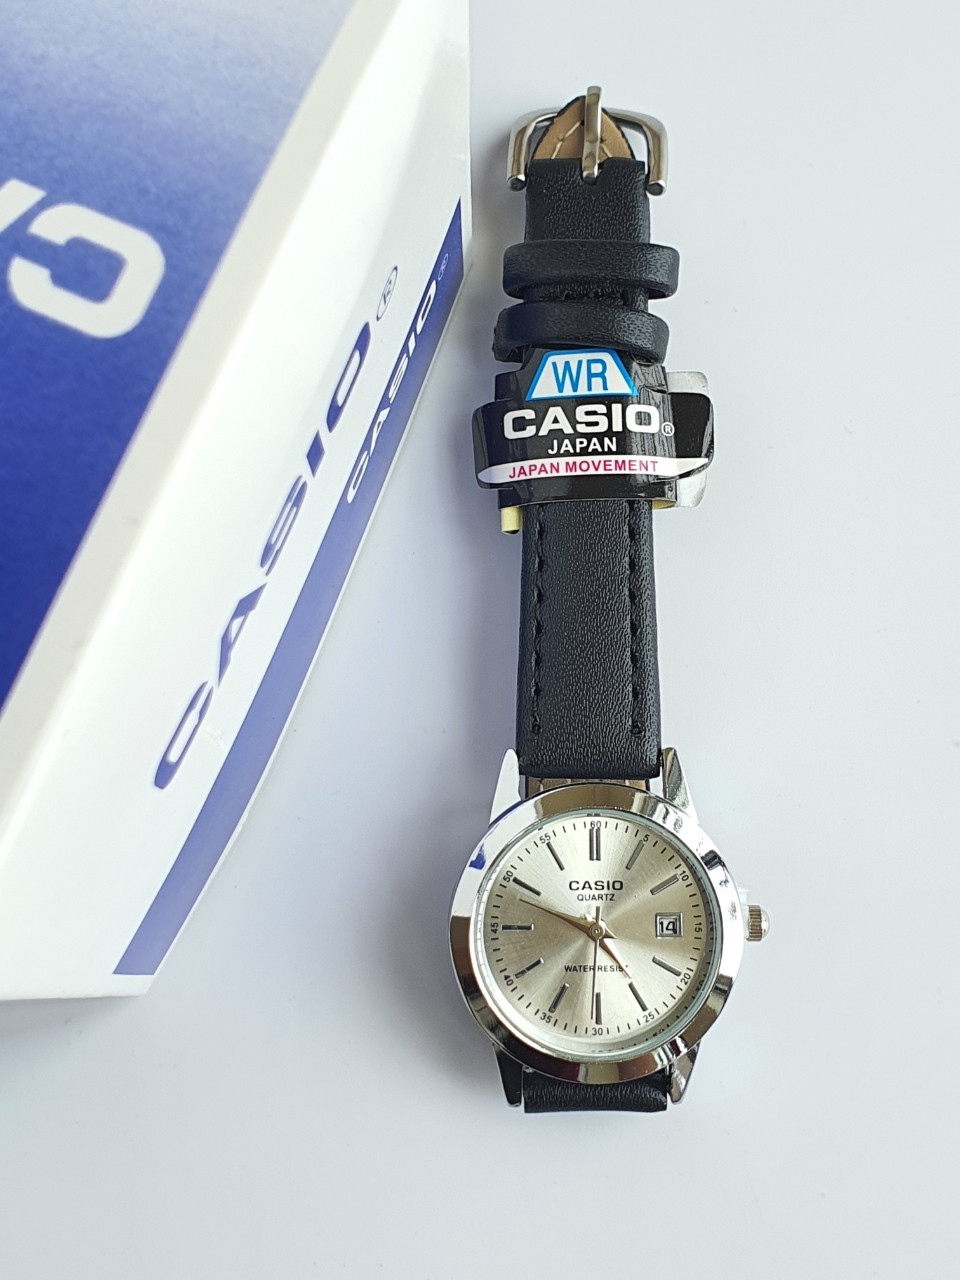 (พร้อมกล่อง) นาฬิกาข้อมือ สายหนัง นาฬิกาcasio นาฬิกาผู้หญิง นาฬิกาสายหนัง ระบบเข็ม แสดงวันที่  RC614